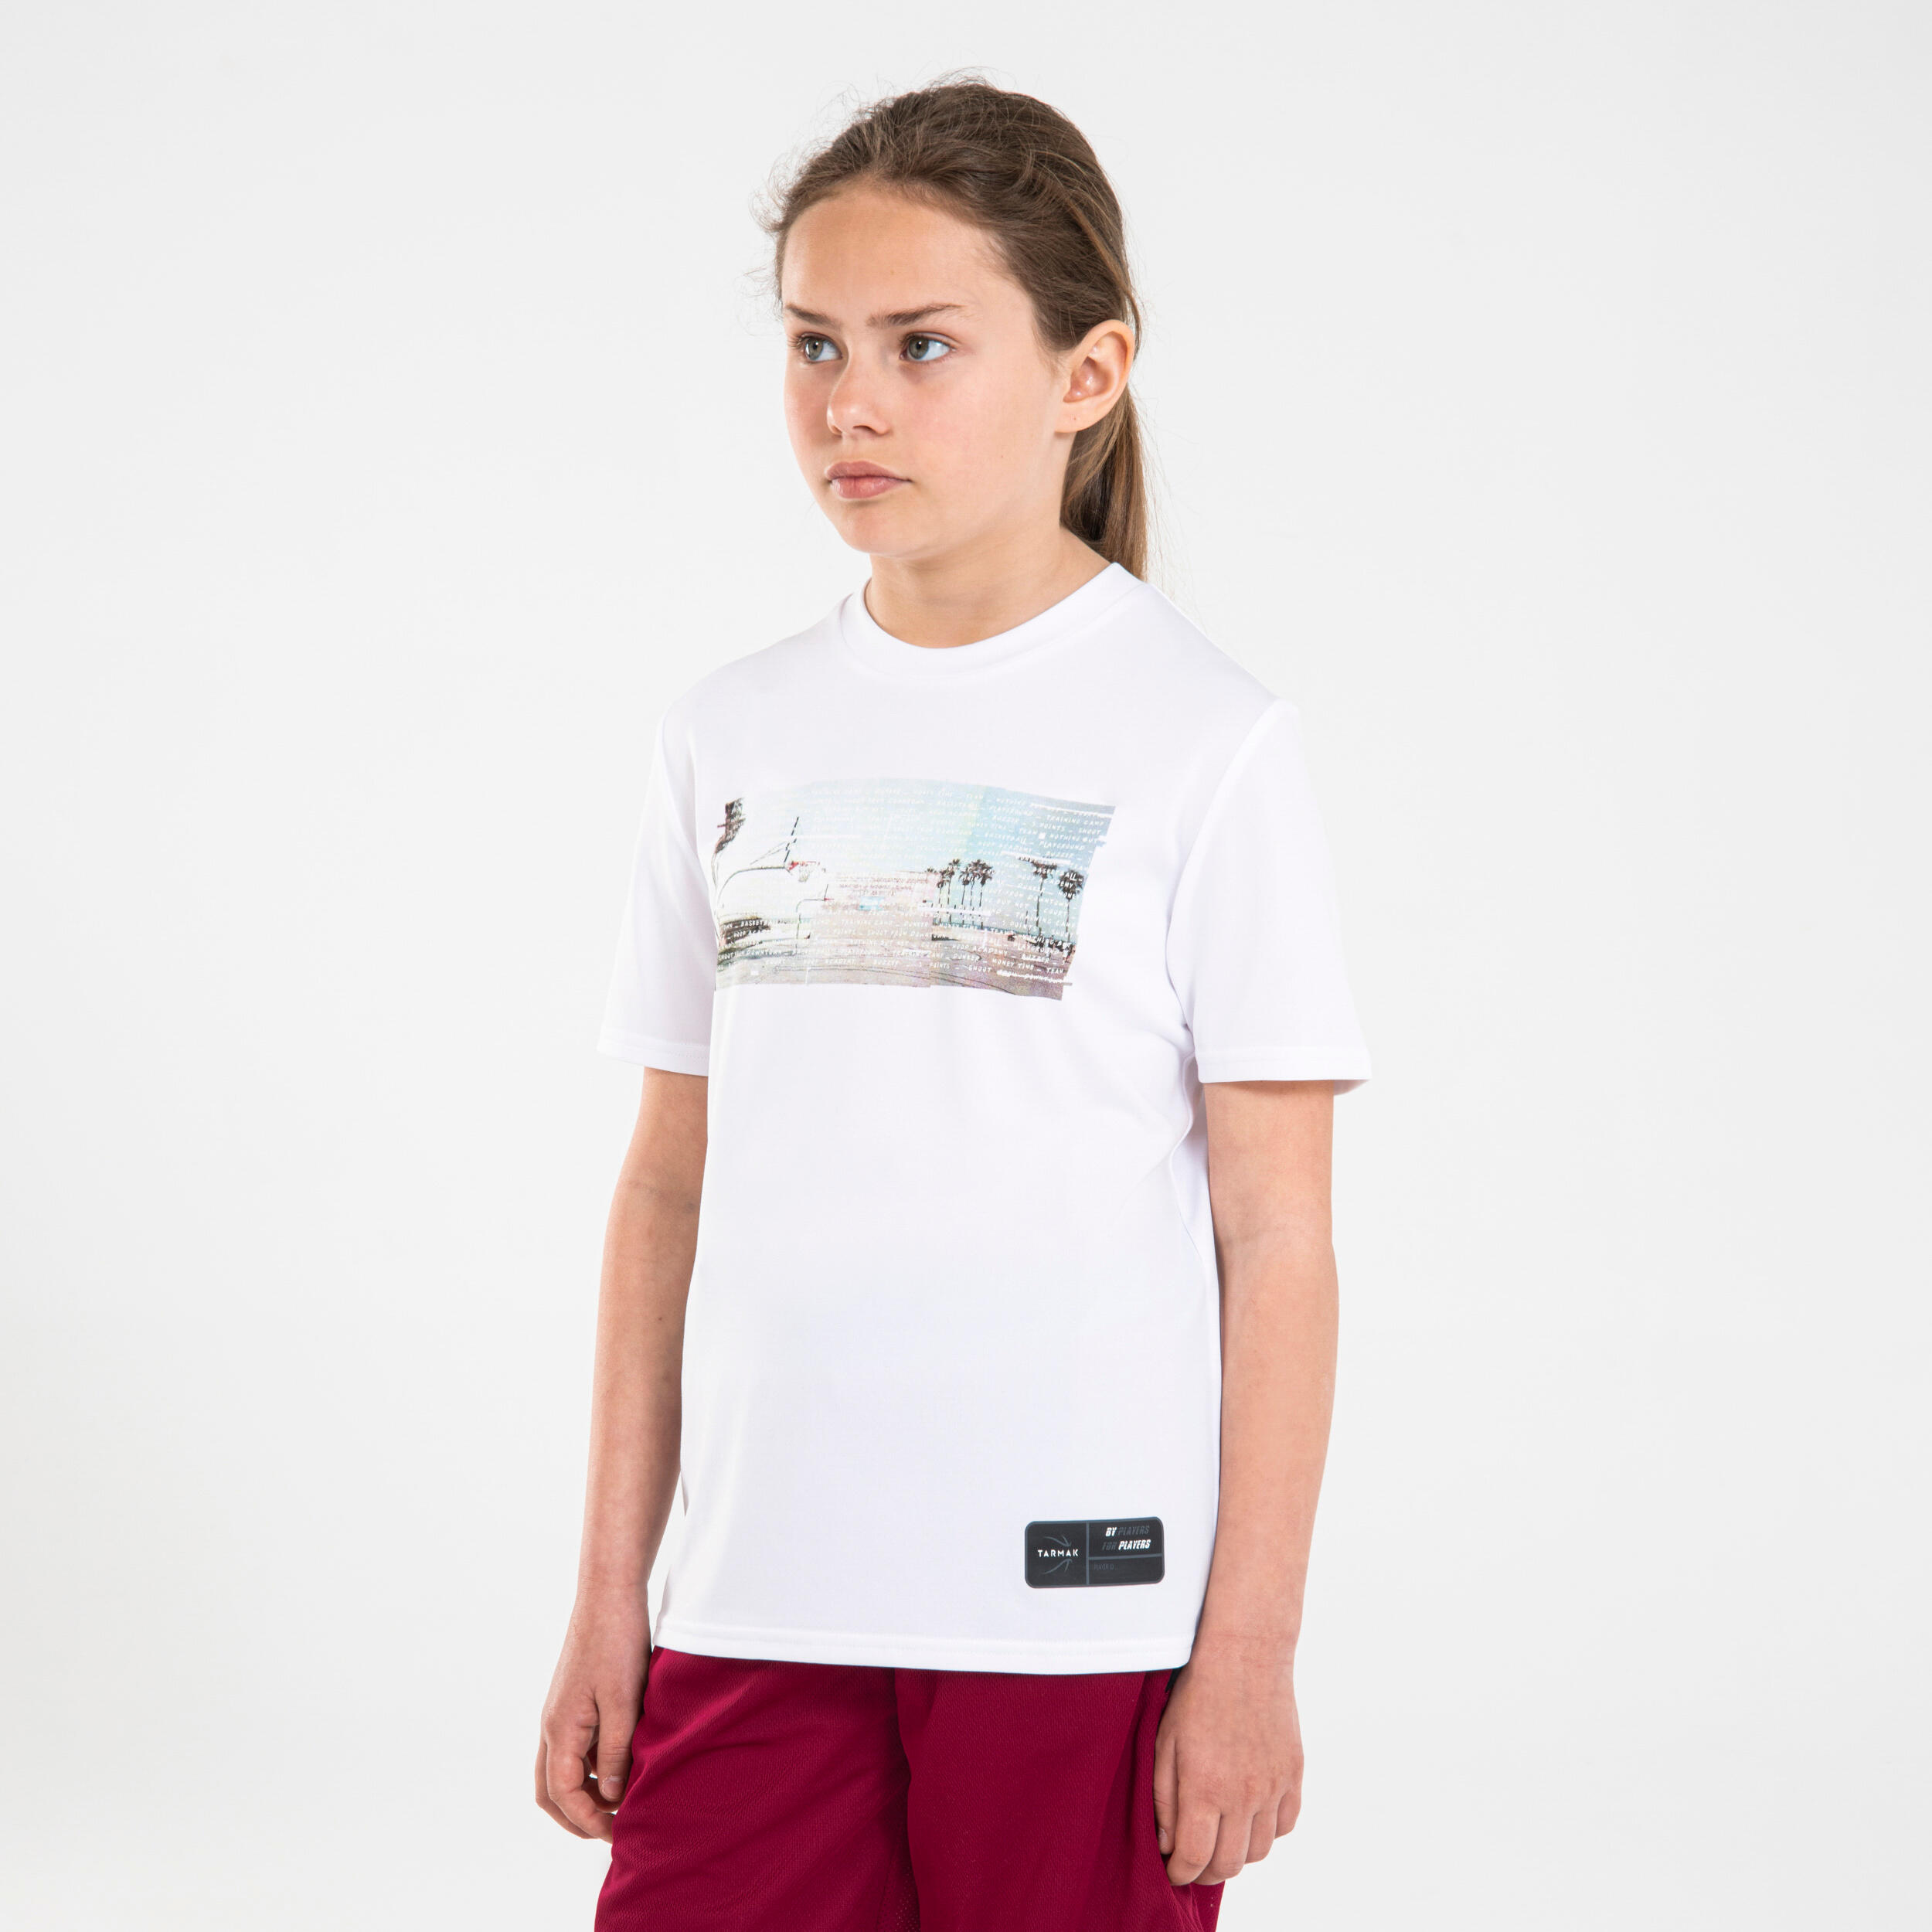 Kids' Basketball T-Shirt / Jersey TS500 Fast - White 5/7